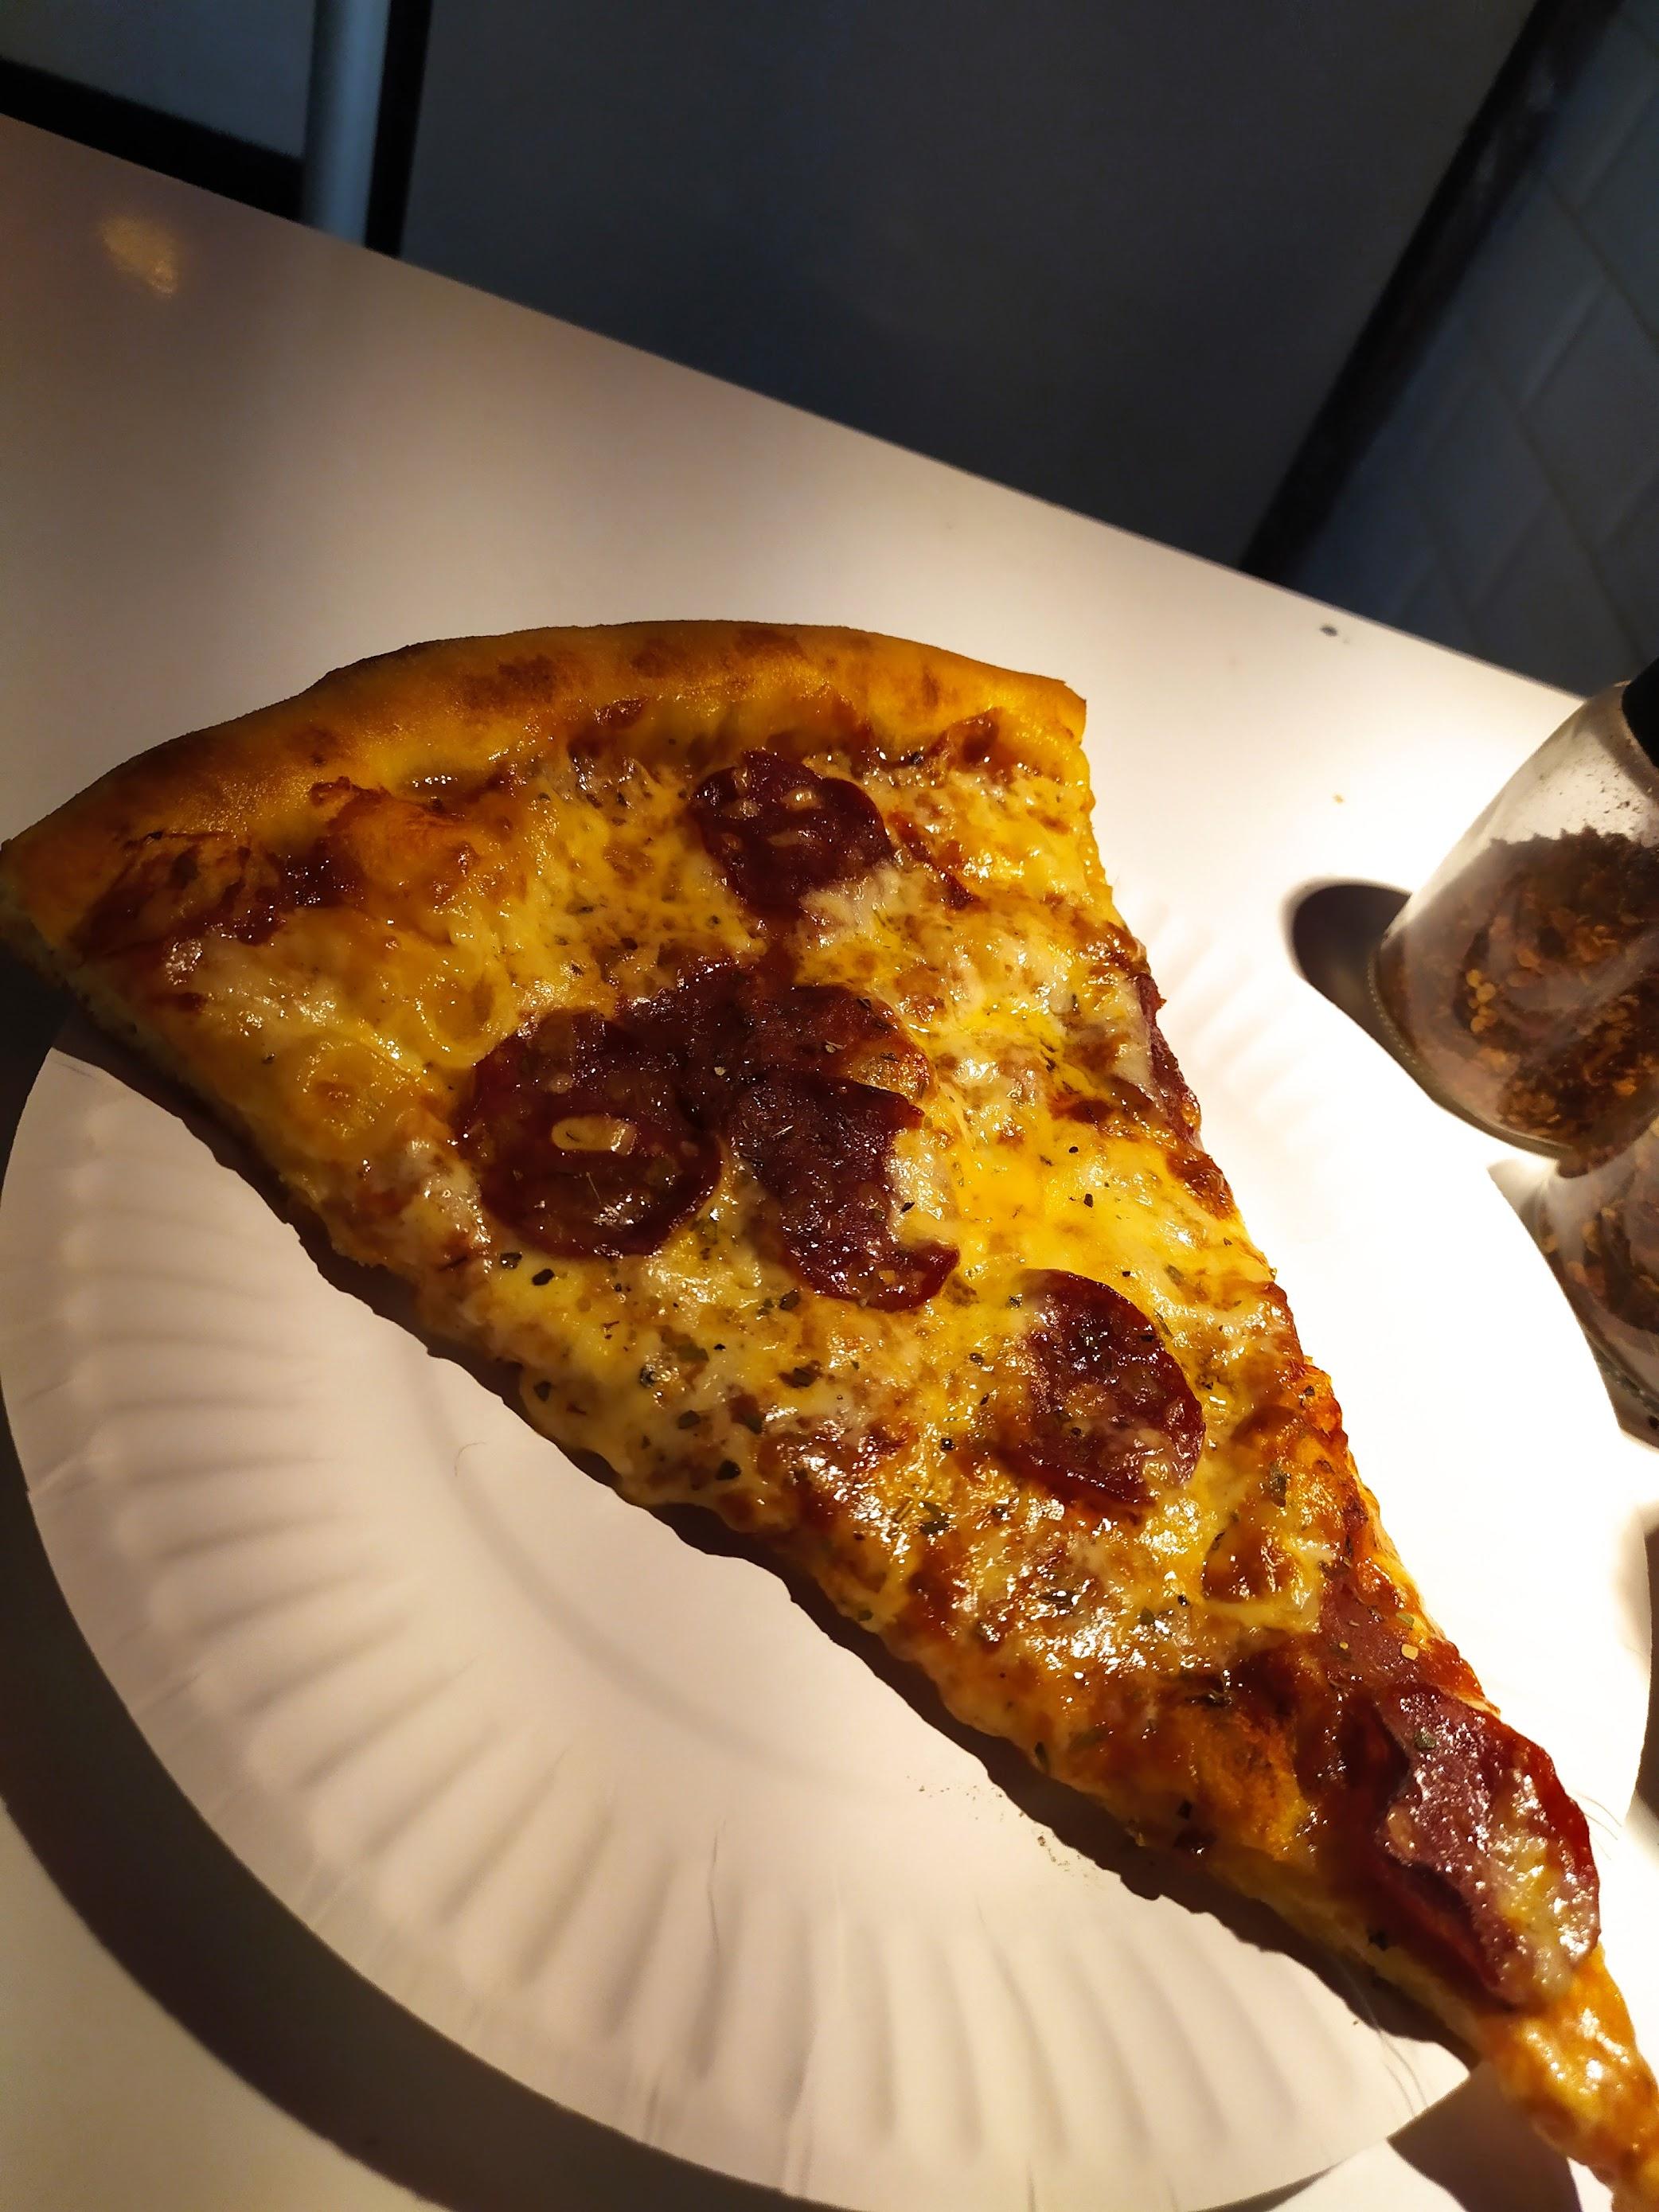 Sliced Pizzeria review